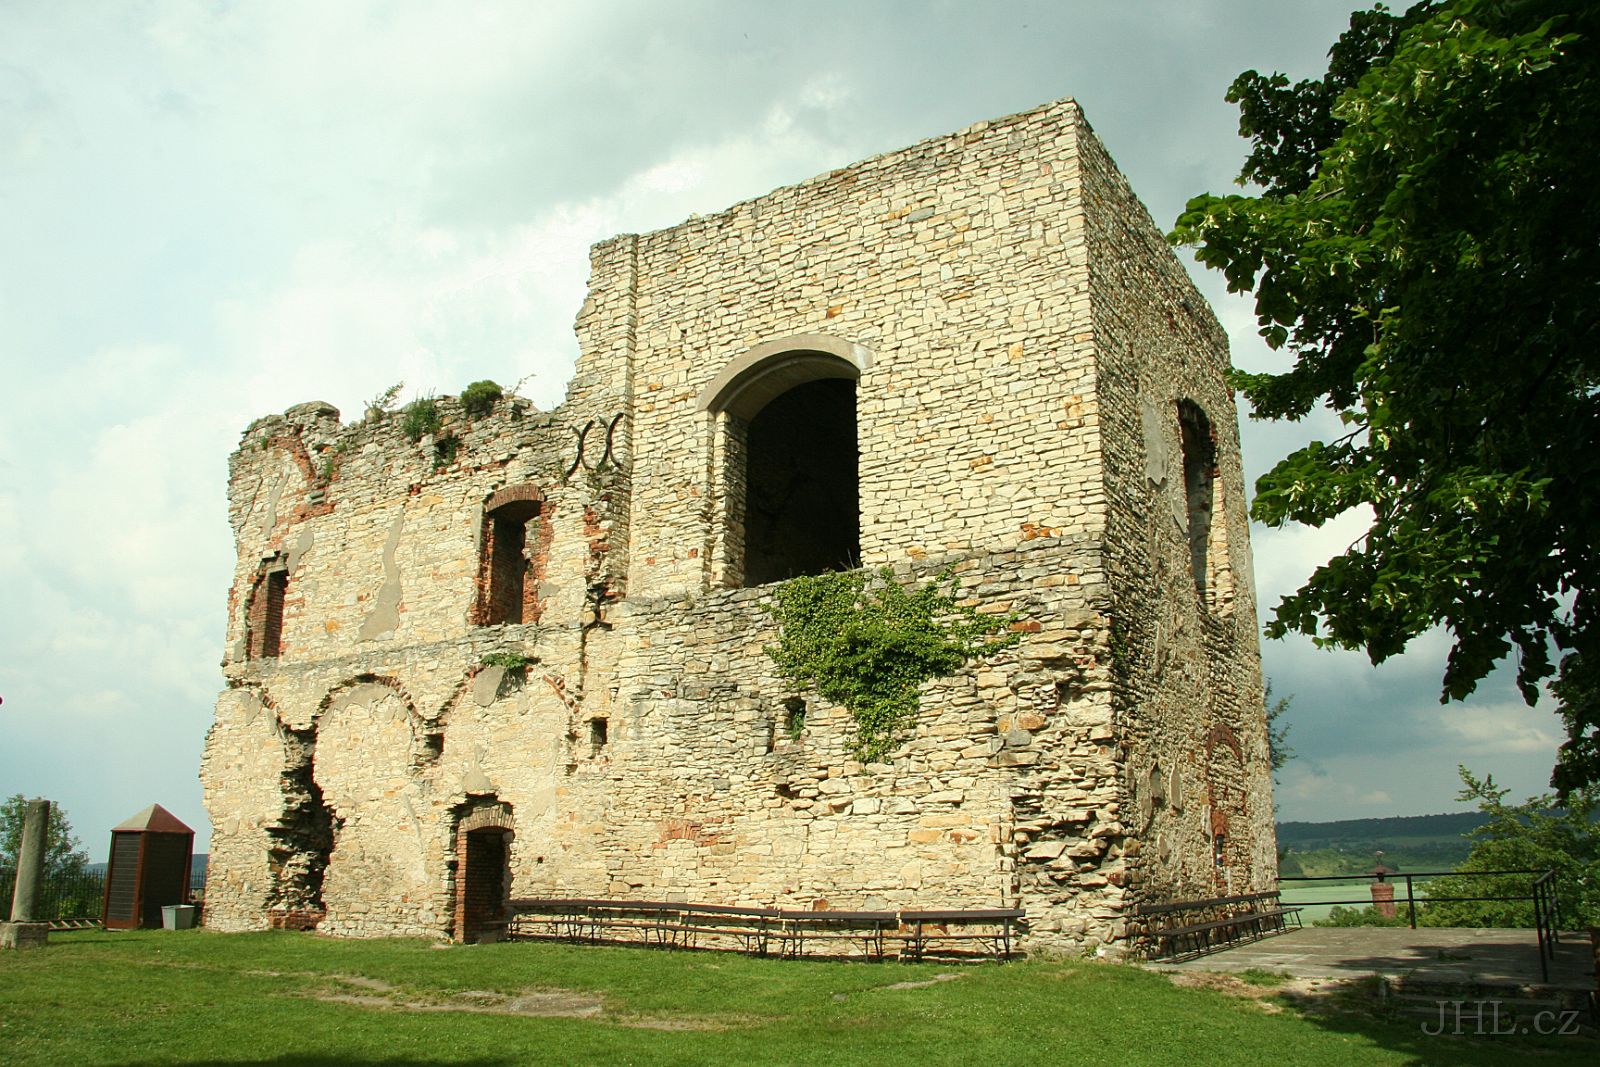 060617c264.JPG - hrad Košumberk - zřícenina hradu postaveného kolem roku 1300